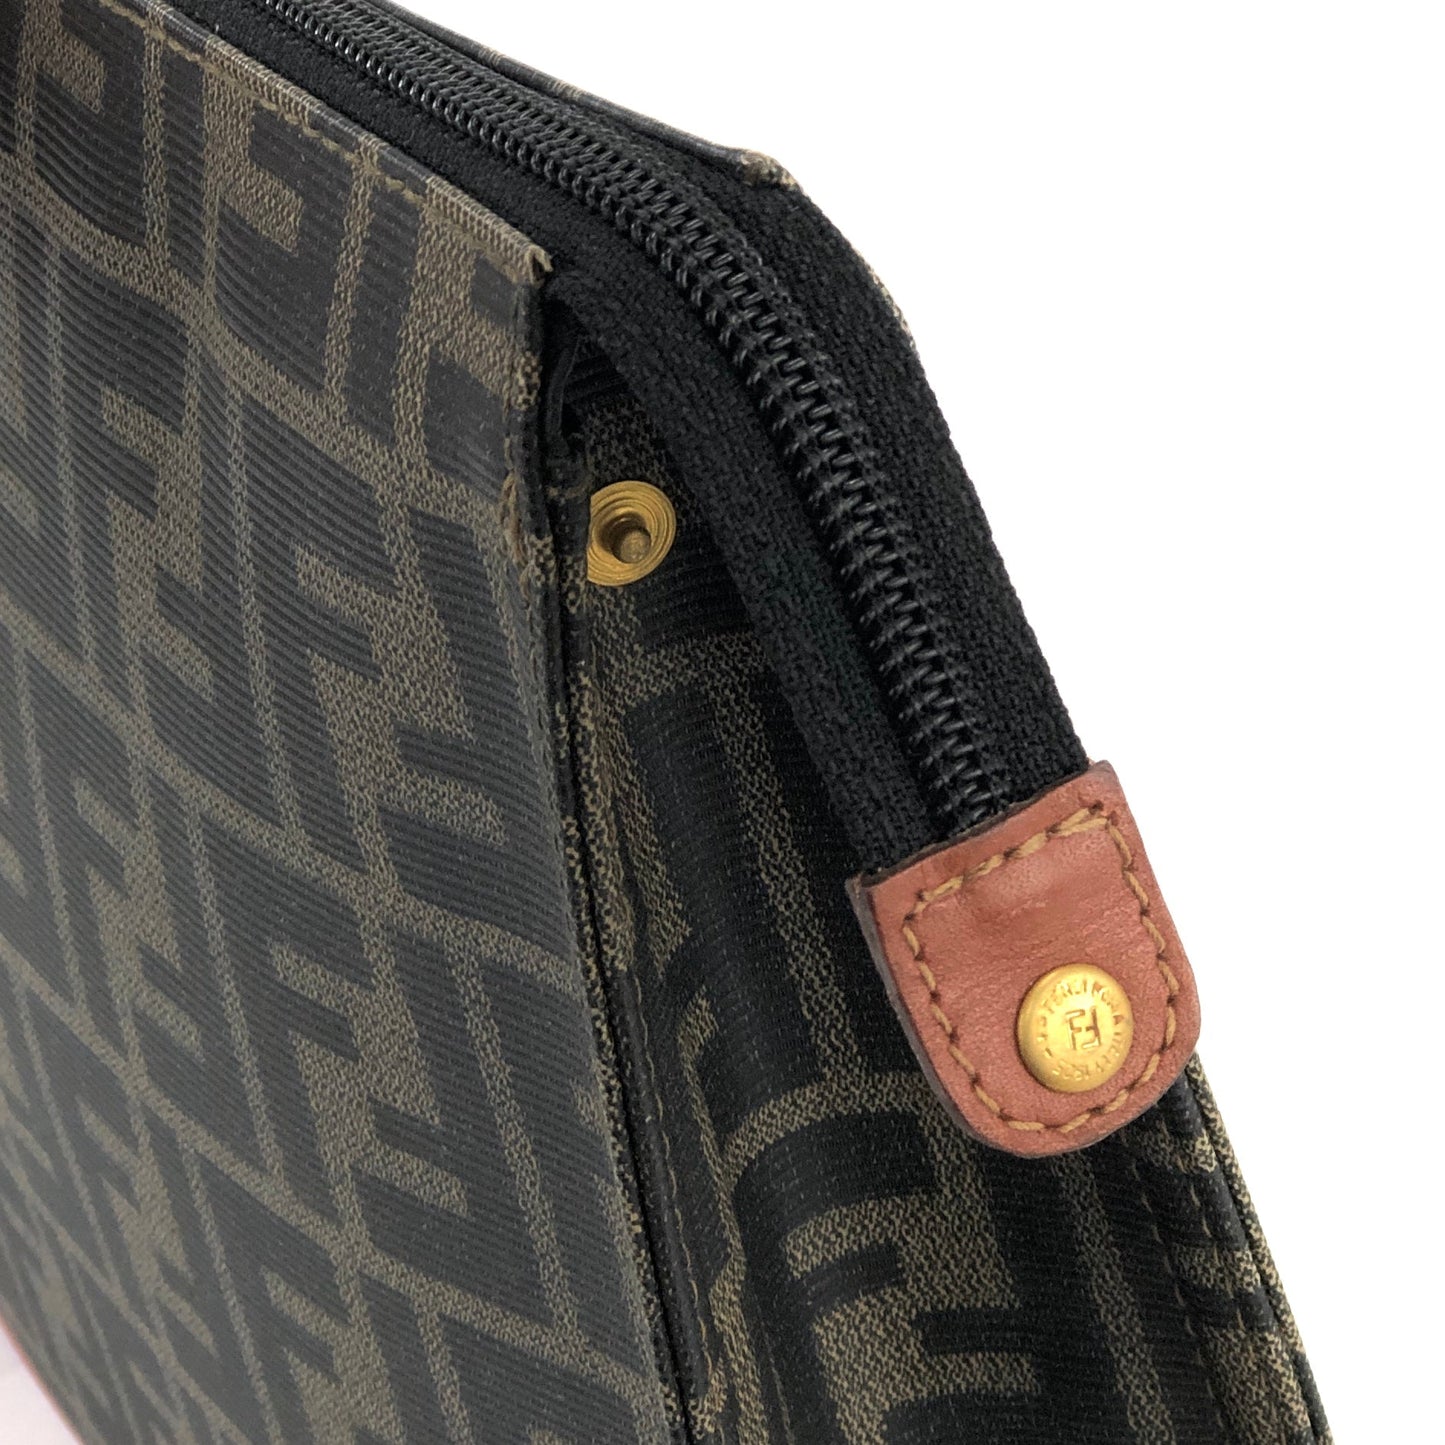 FENDI Zucca FF logo jacquard leather clutch bag brown vintage old uhs662